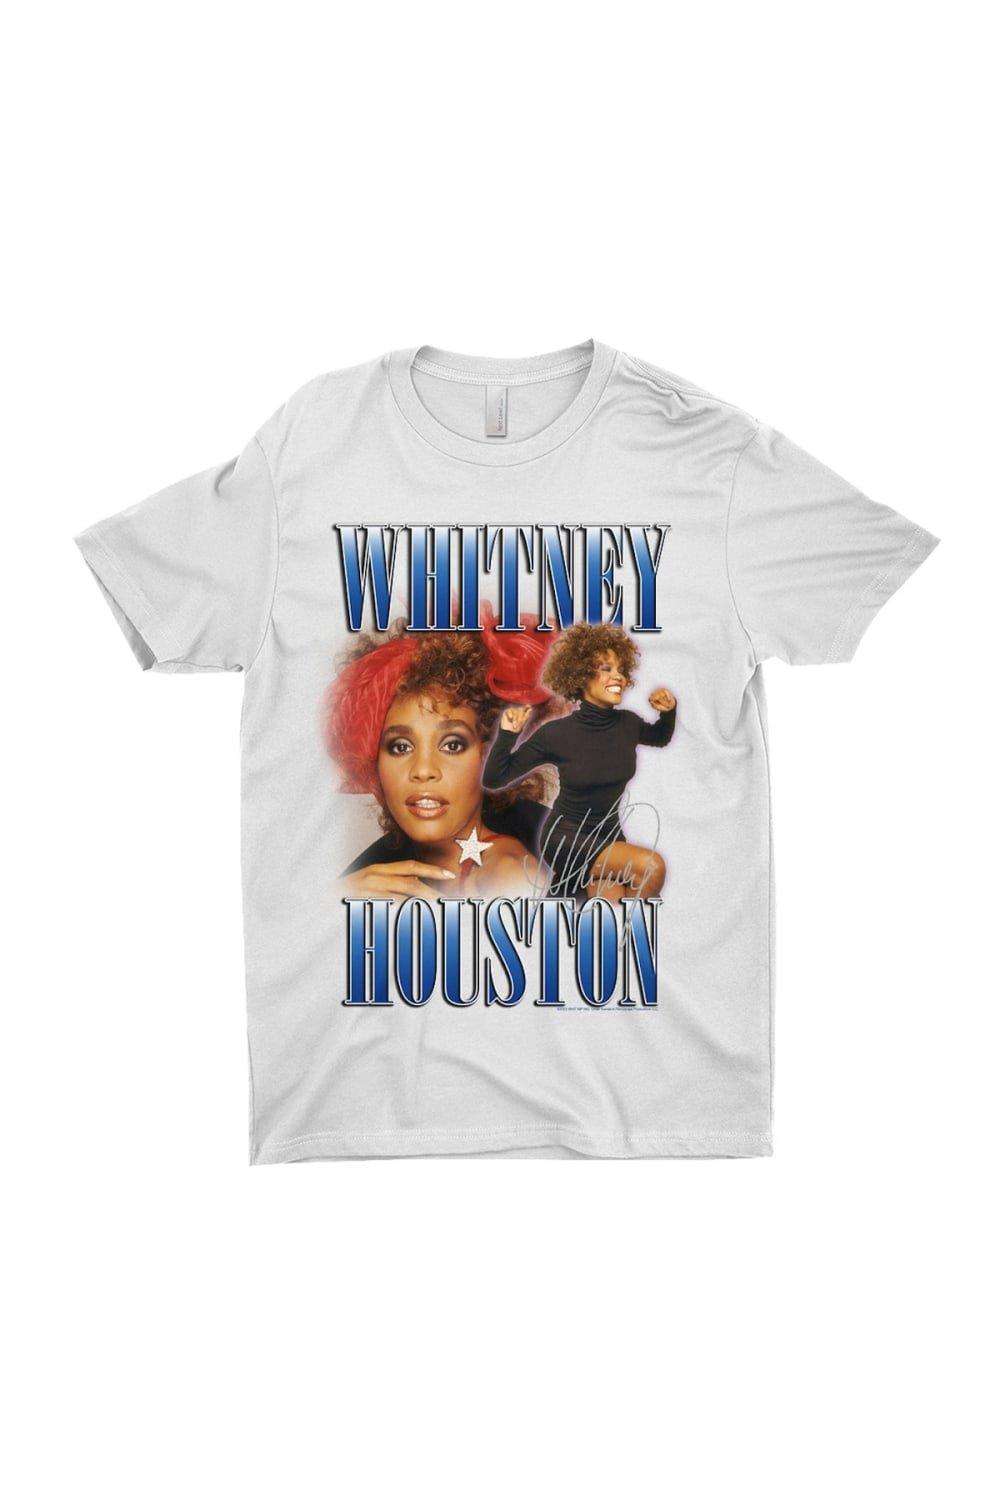 Хлопковая футболка в стиле 90-х годов Whitney Houston, белый 3x5 футов флаг hellas полиэстер печатная фотография для гоночного декора